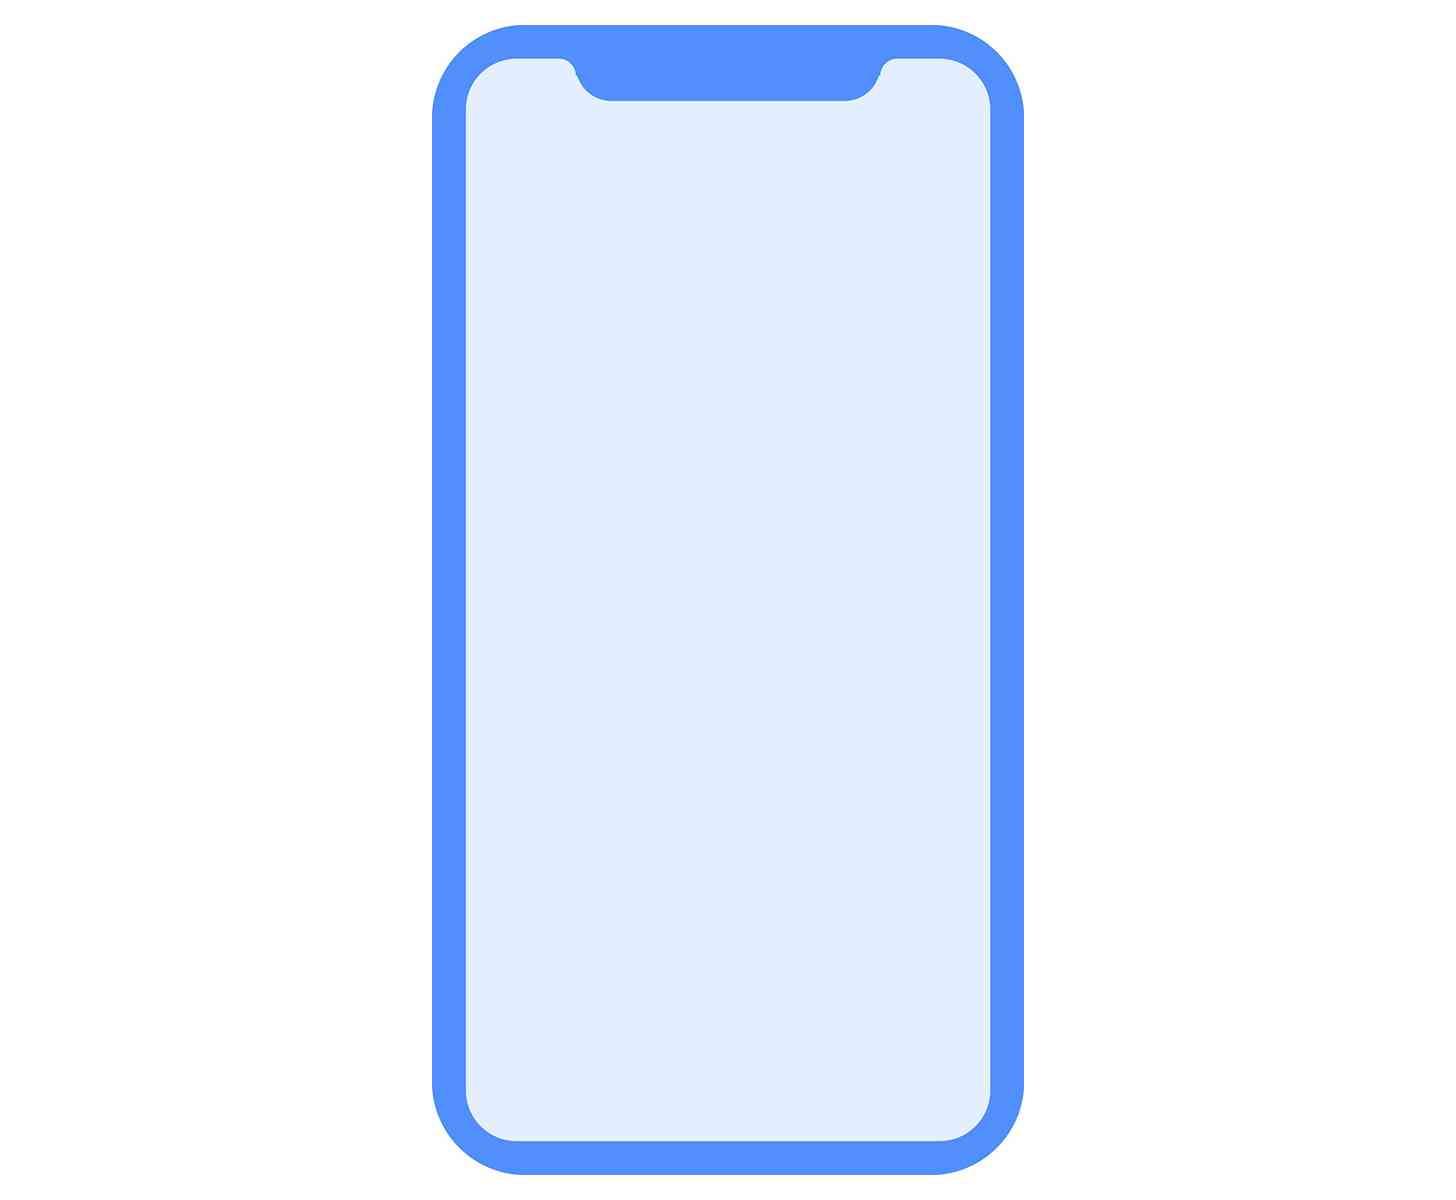 iPhone 8 design leak